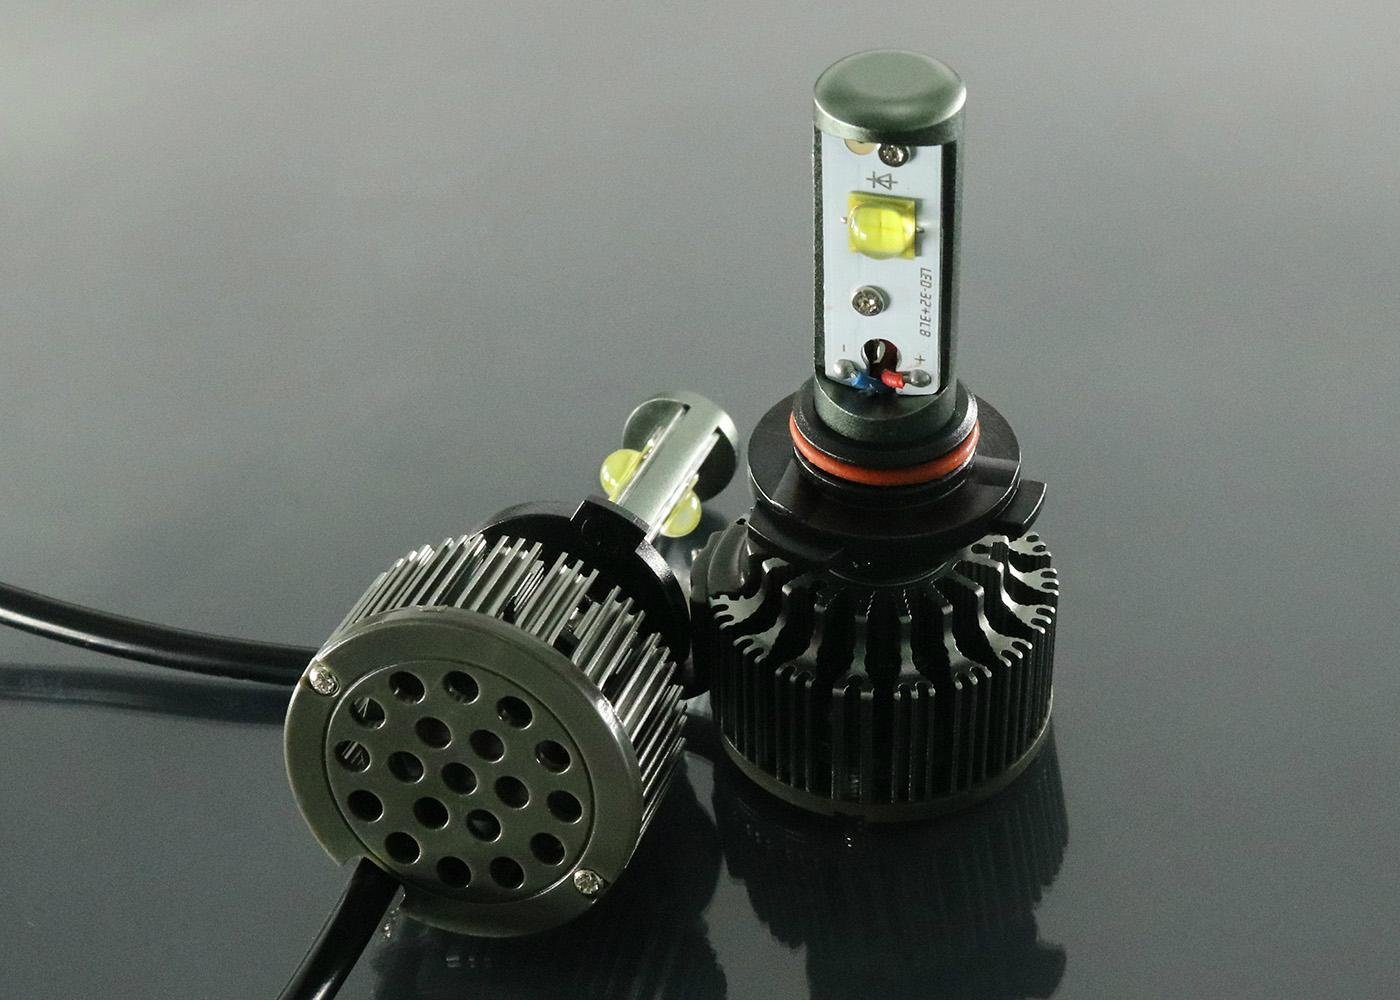 Super LED Lamp For Auto 9005 HB3 Car Headlight LED Conversion Kits Vehicle Light 4